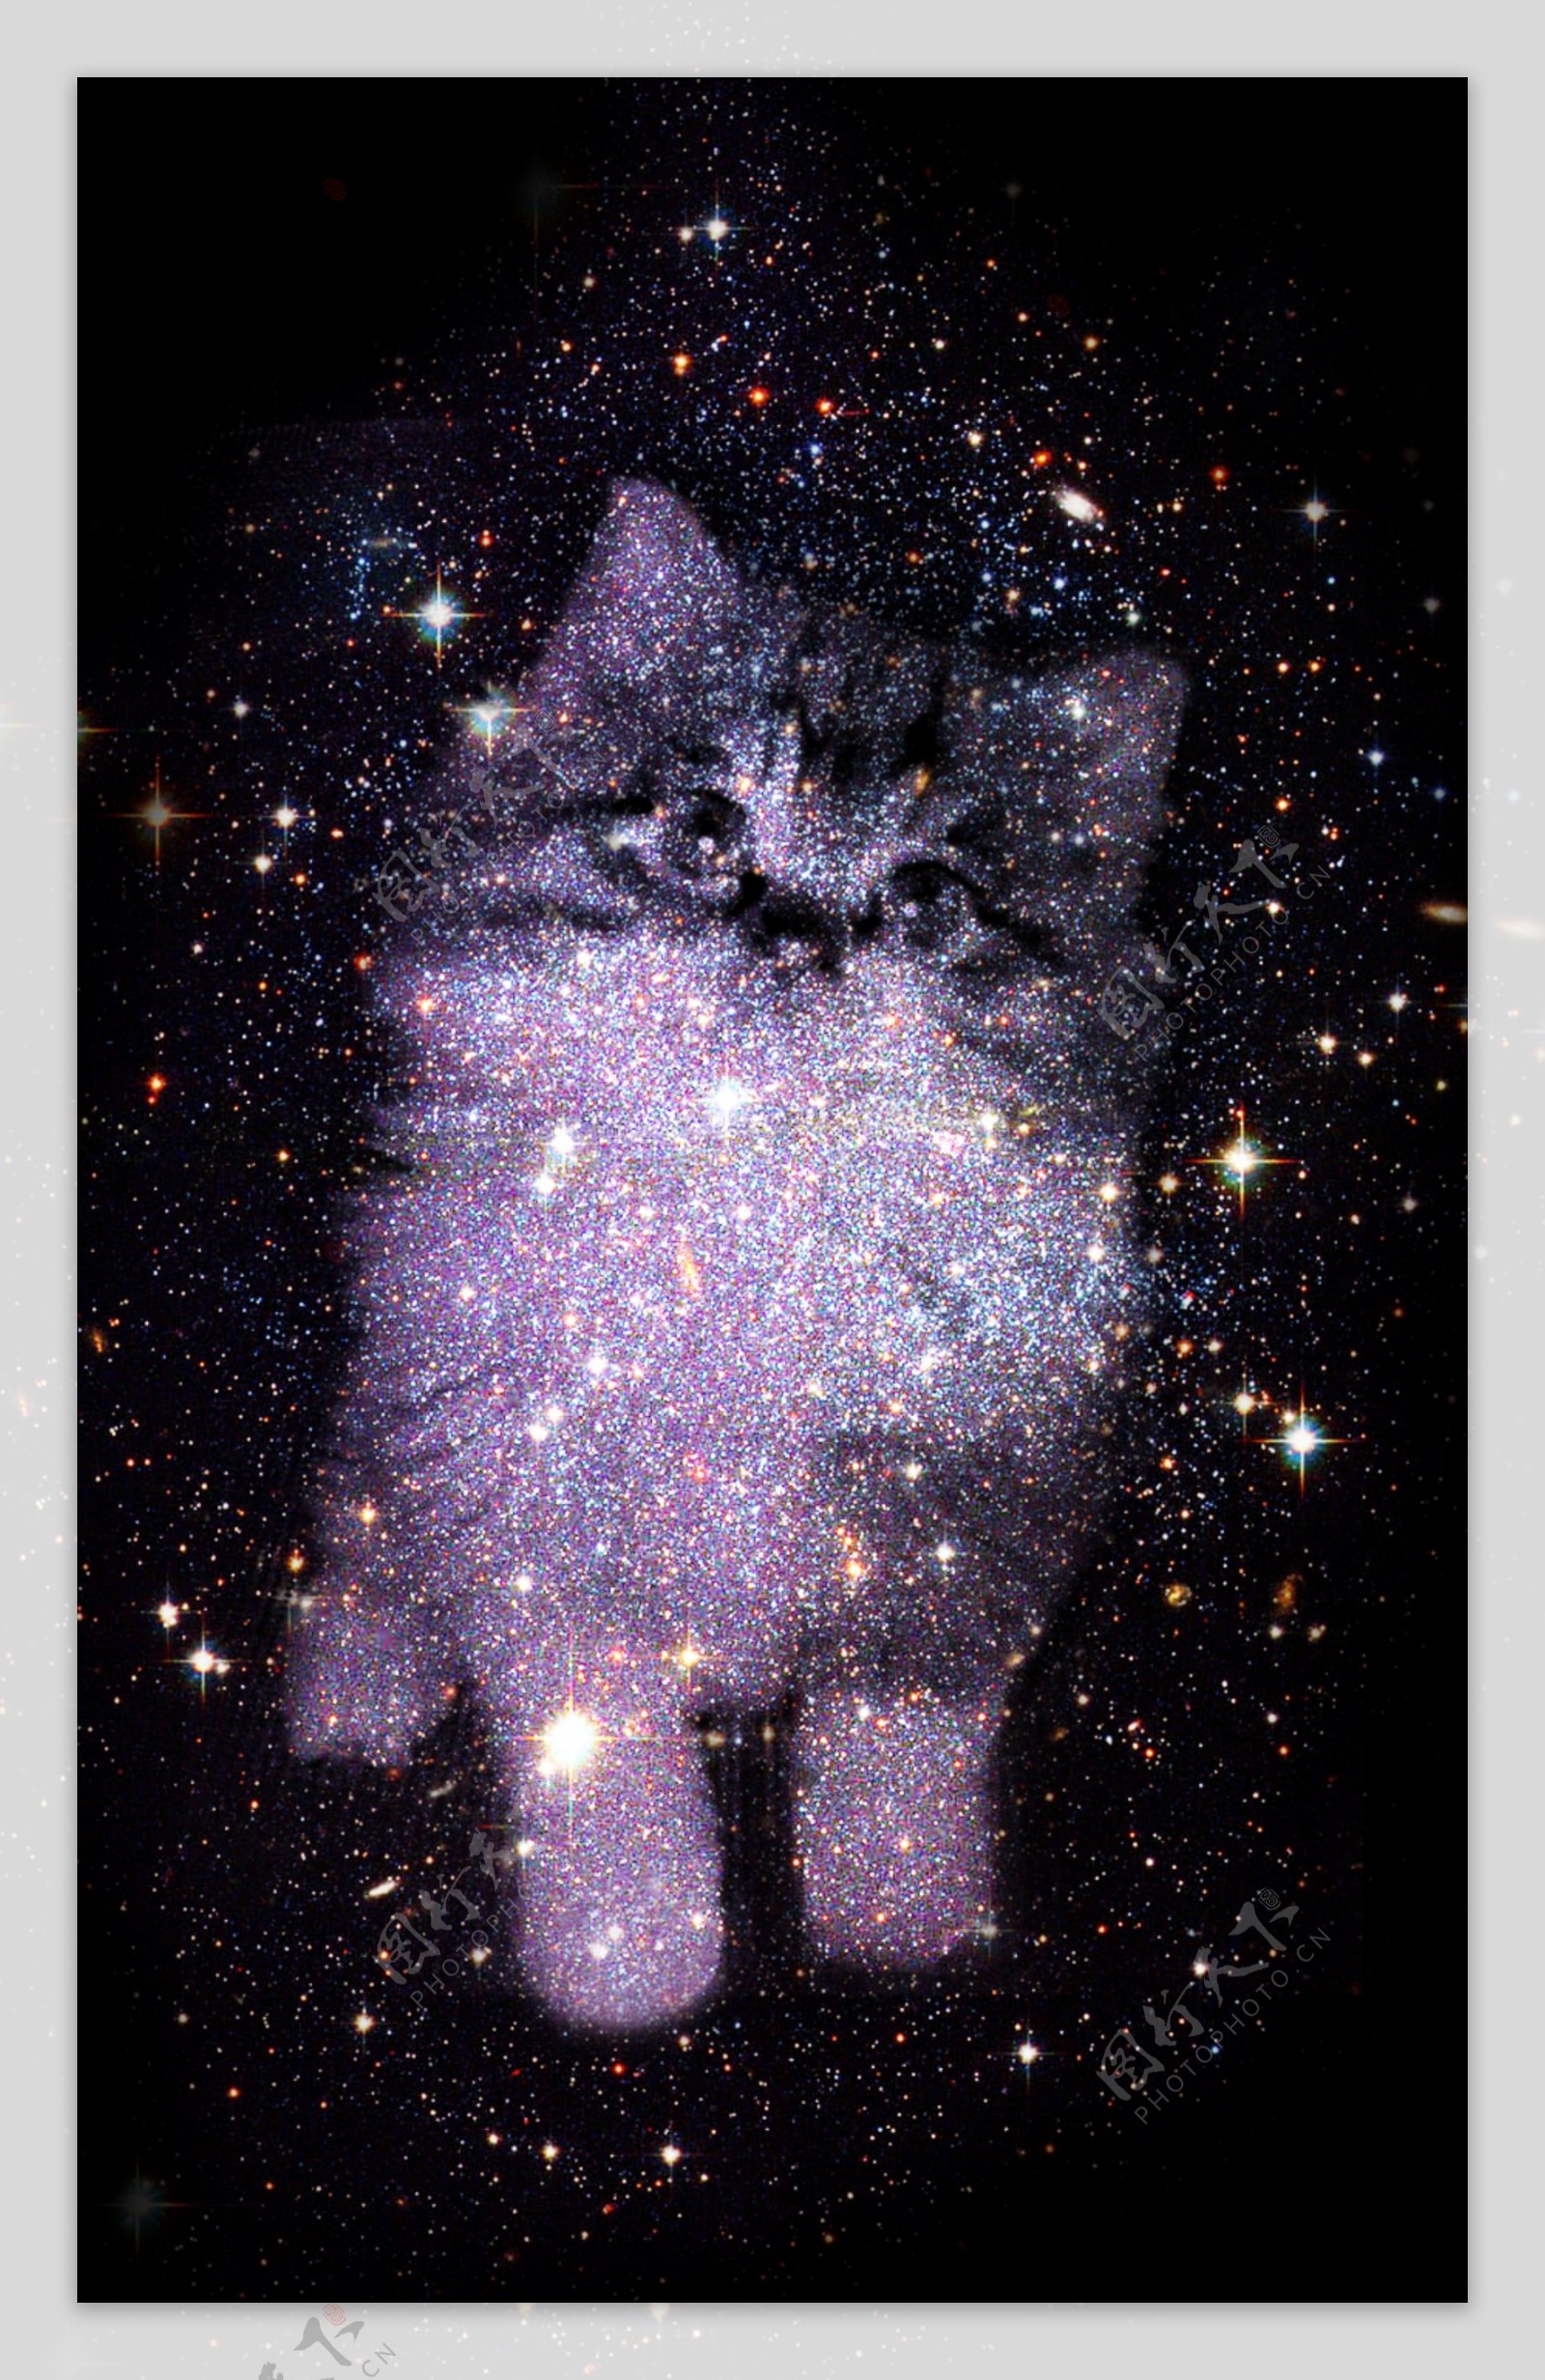 星空中的萌猫